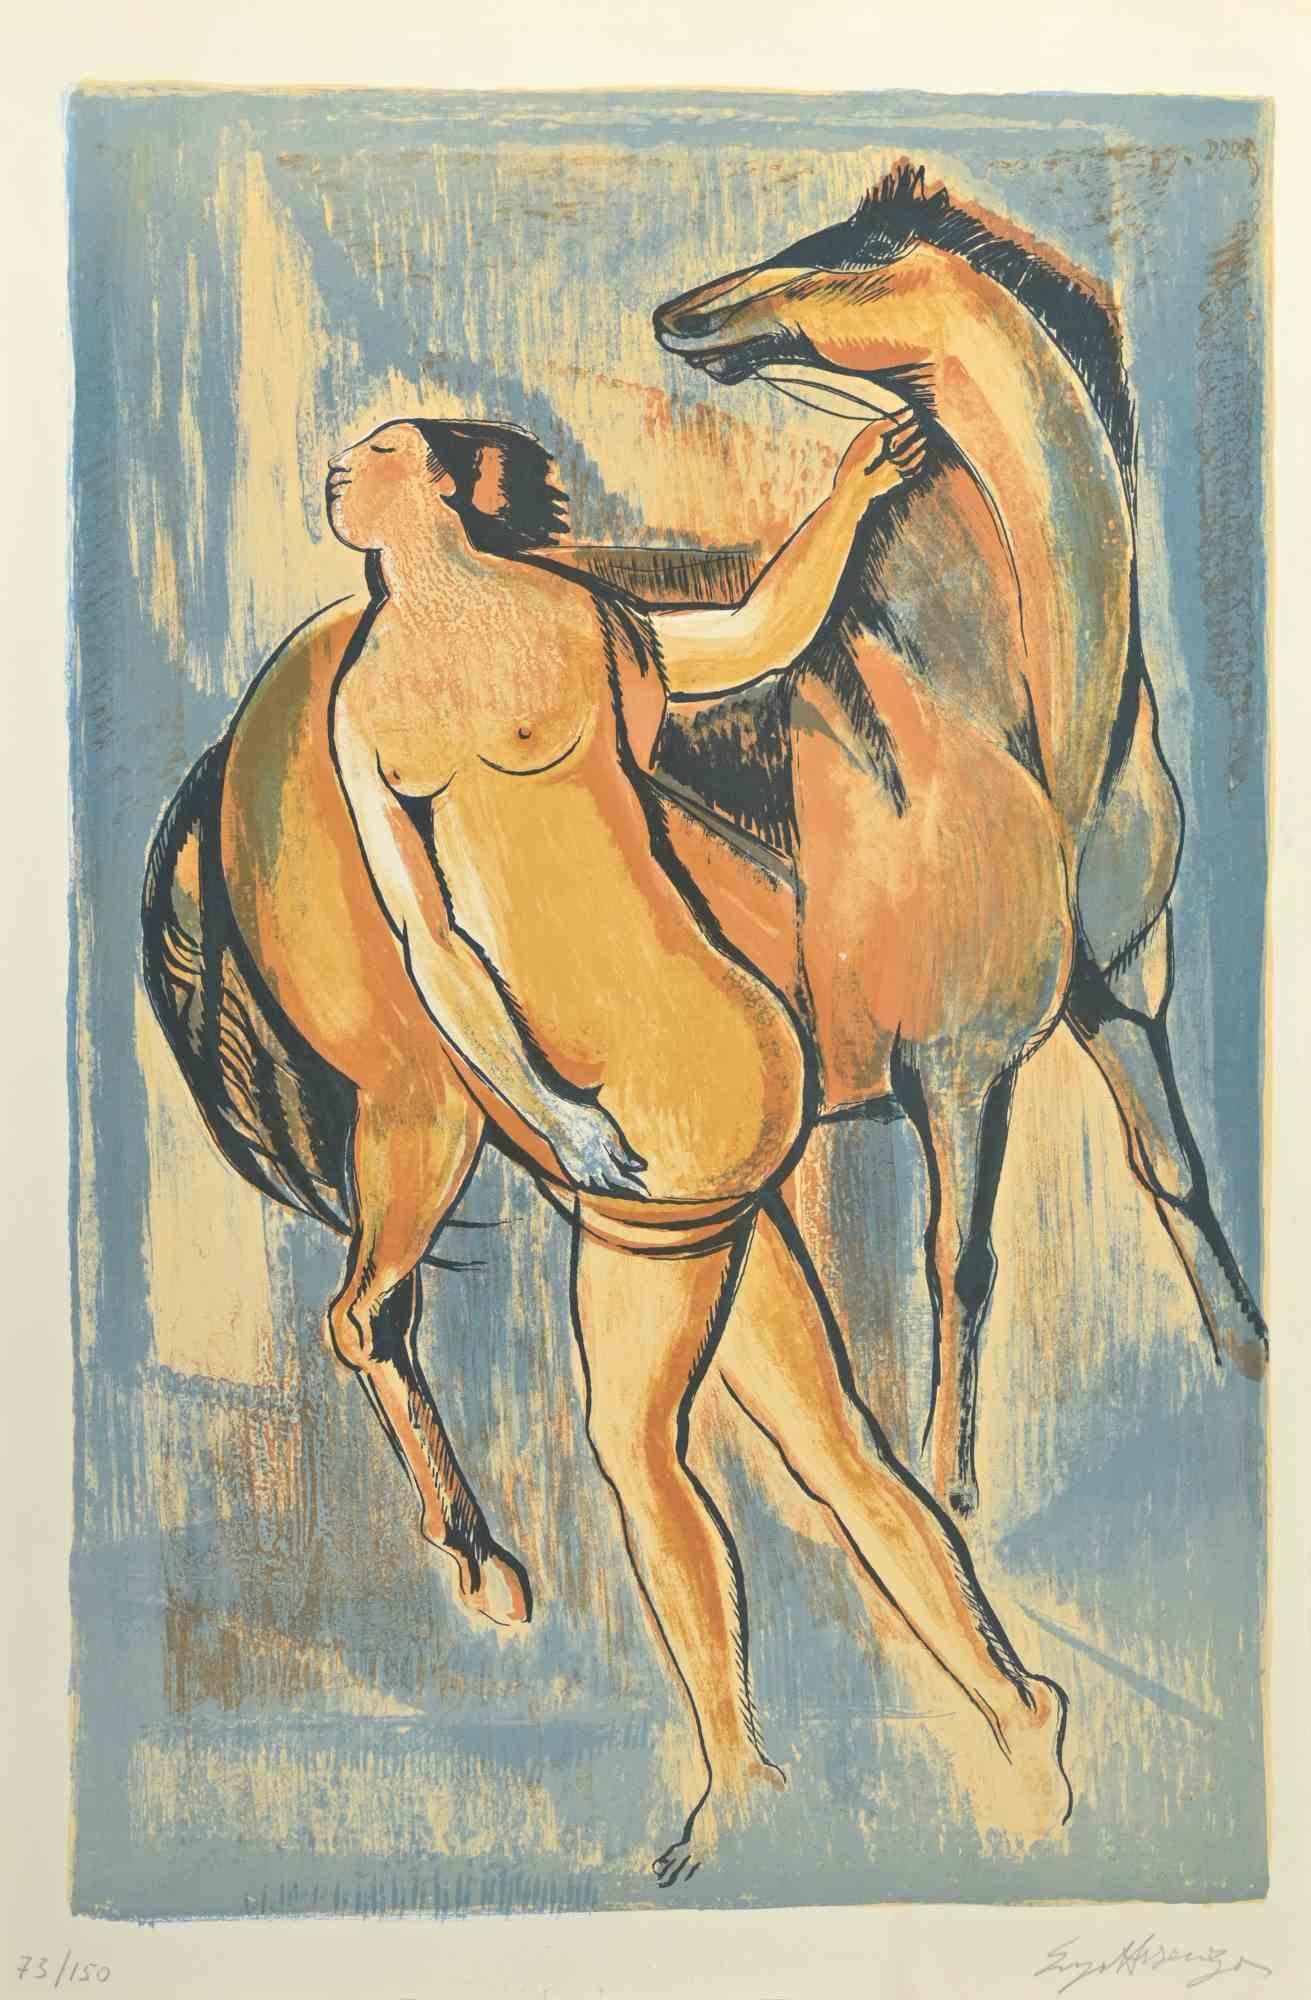 Femme avec cheval est une oeuvre d'art réalisée par Enzo Assenza.

Impression en technique lithographique.

Signé à la main par l'artiste au crayon dans le coin inférieur droit.

Édition numérotée de 150 exemplaires.

Très bonnes conditions. 